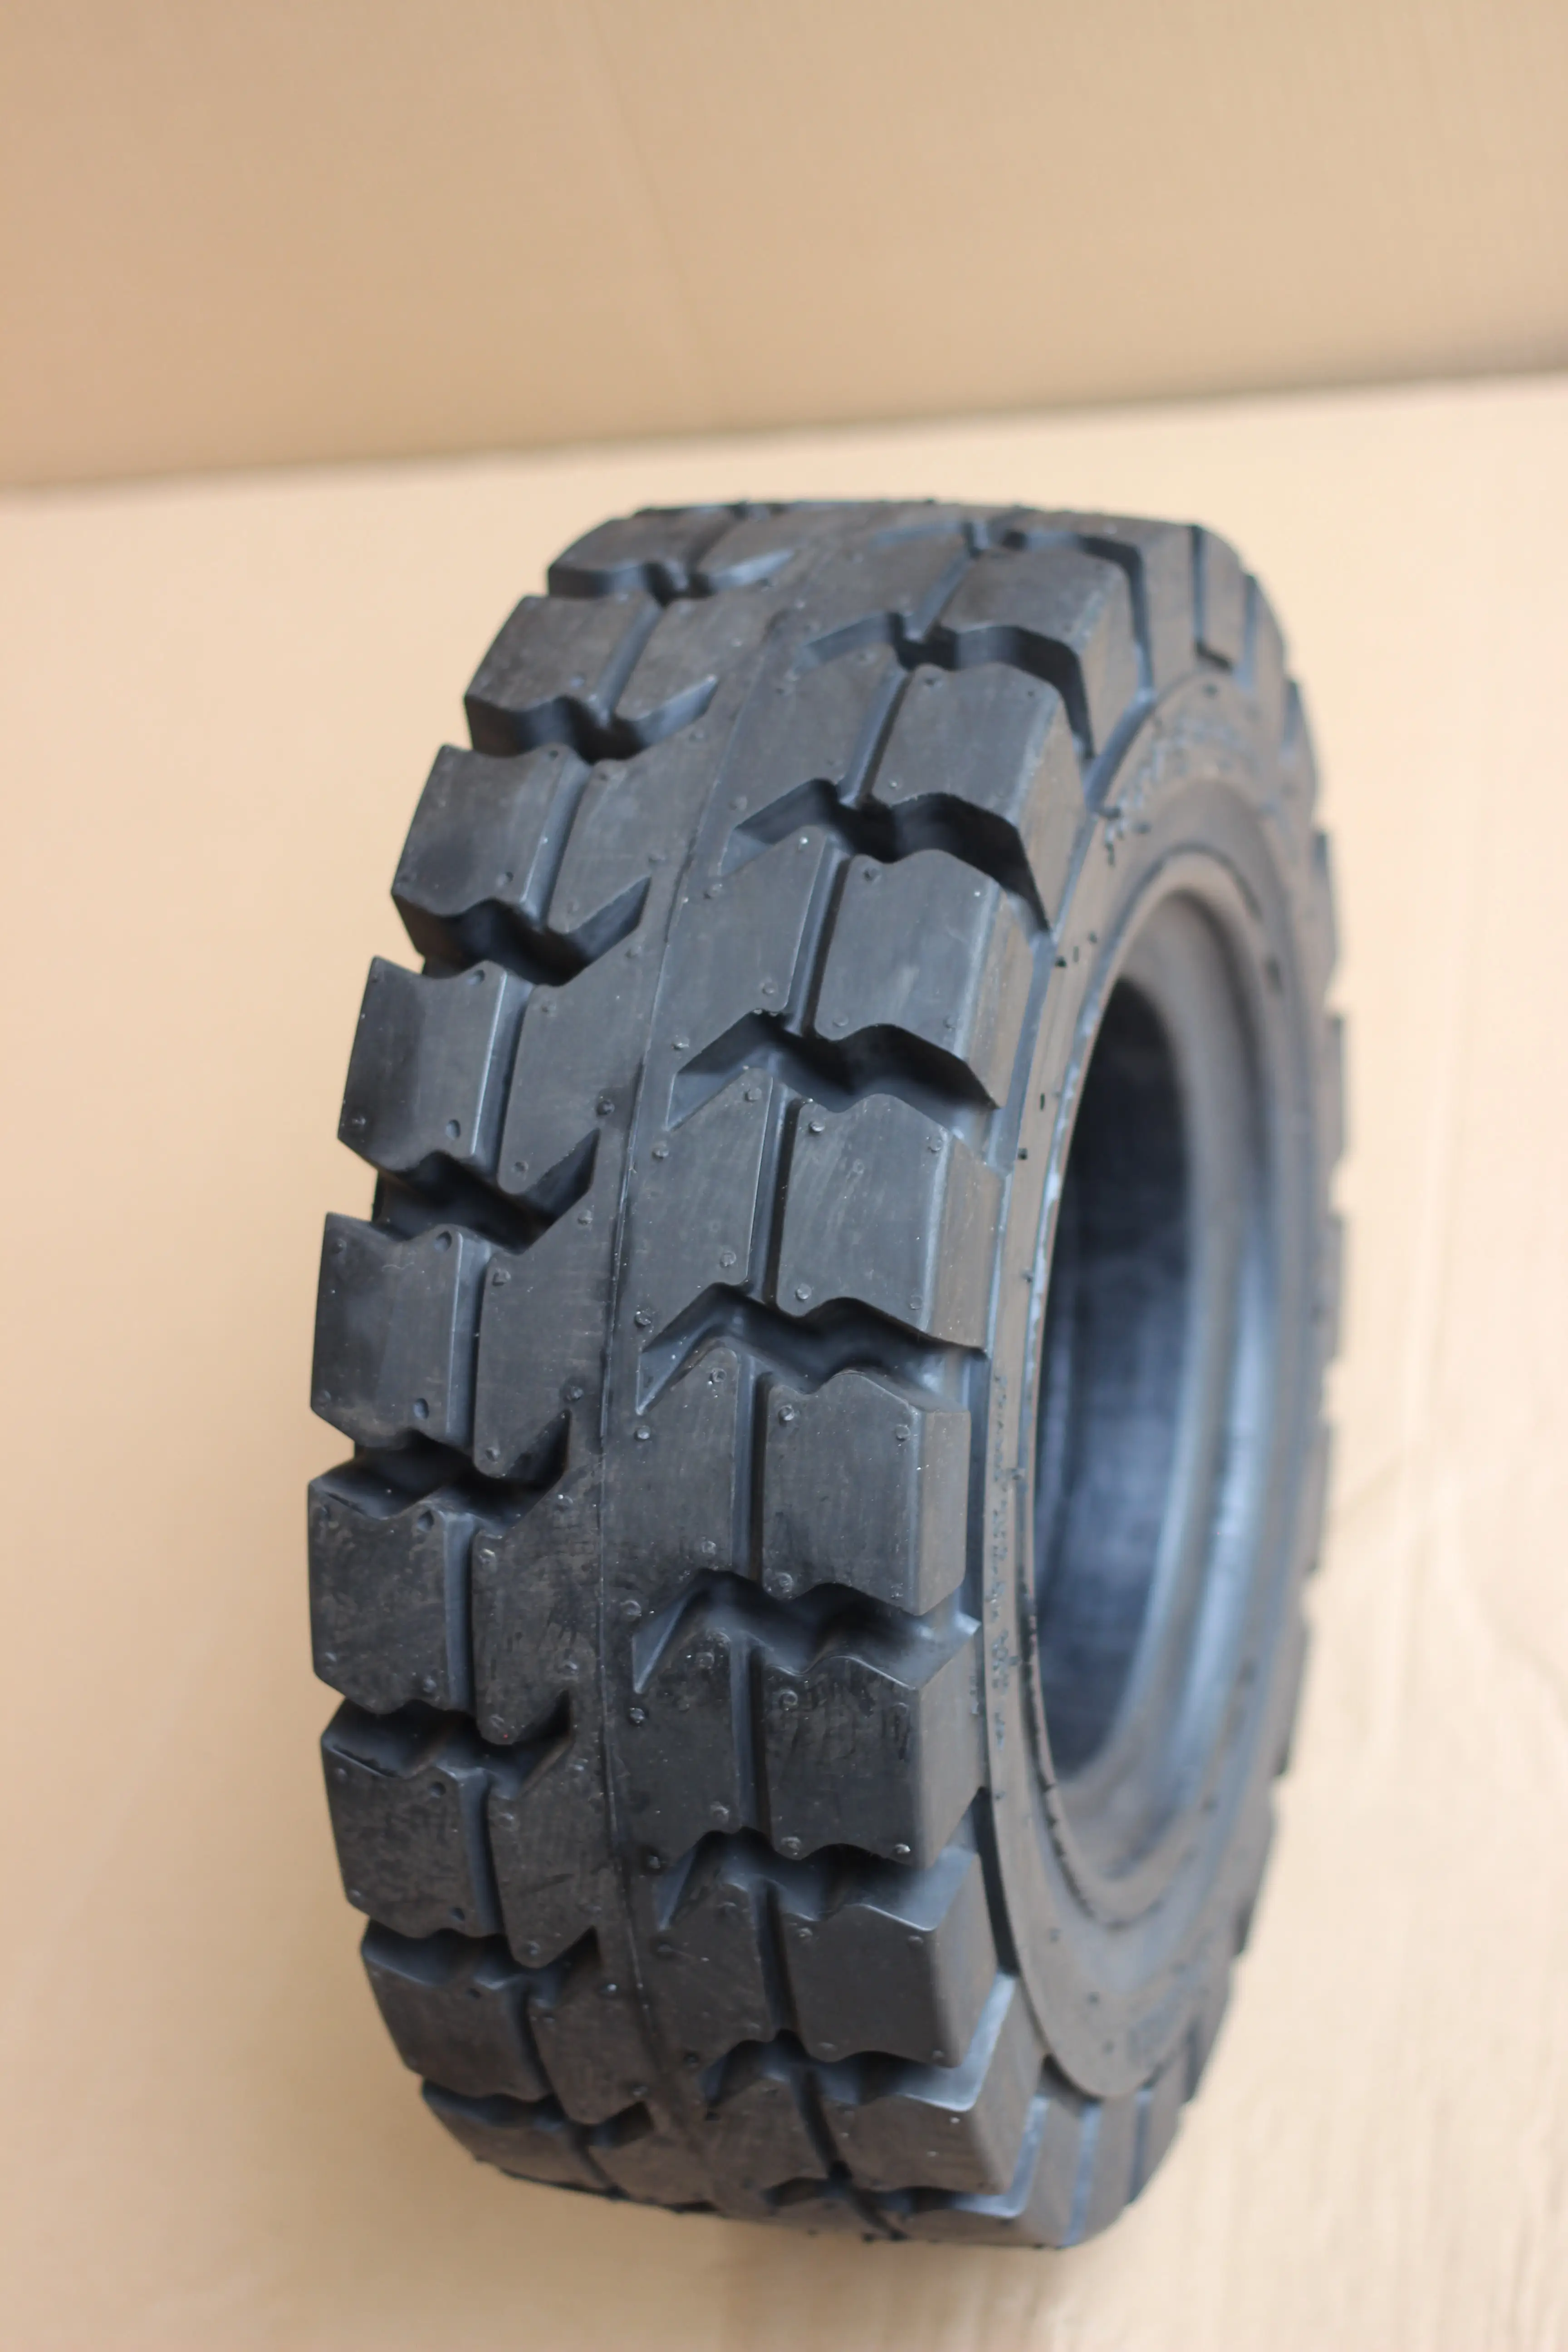 Linde forklift parts 6.00.9 6.50-10 18x7-8 21x8-9 28x9-15 solid forklift tires